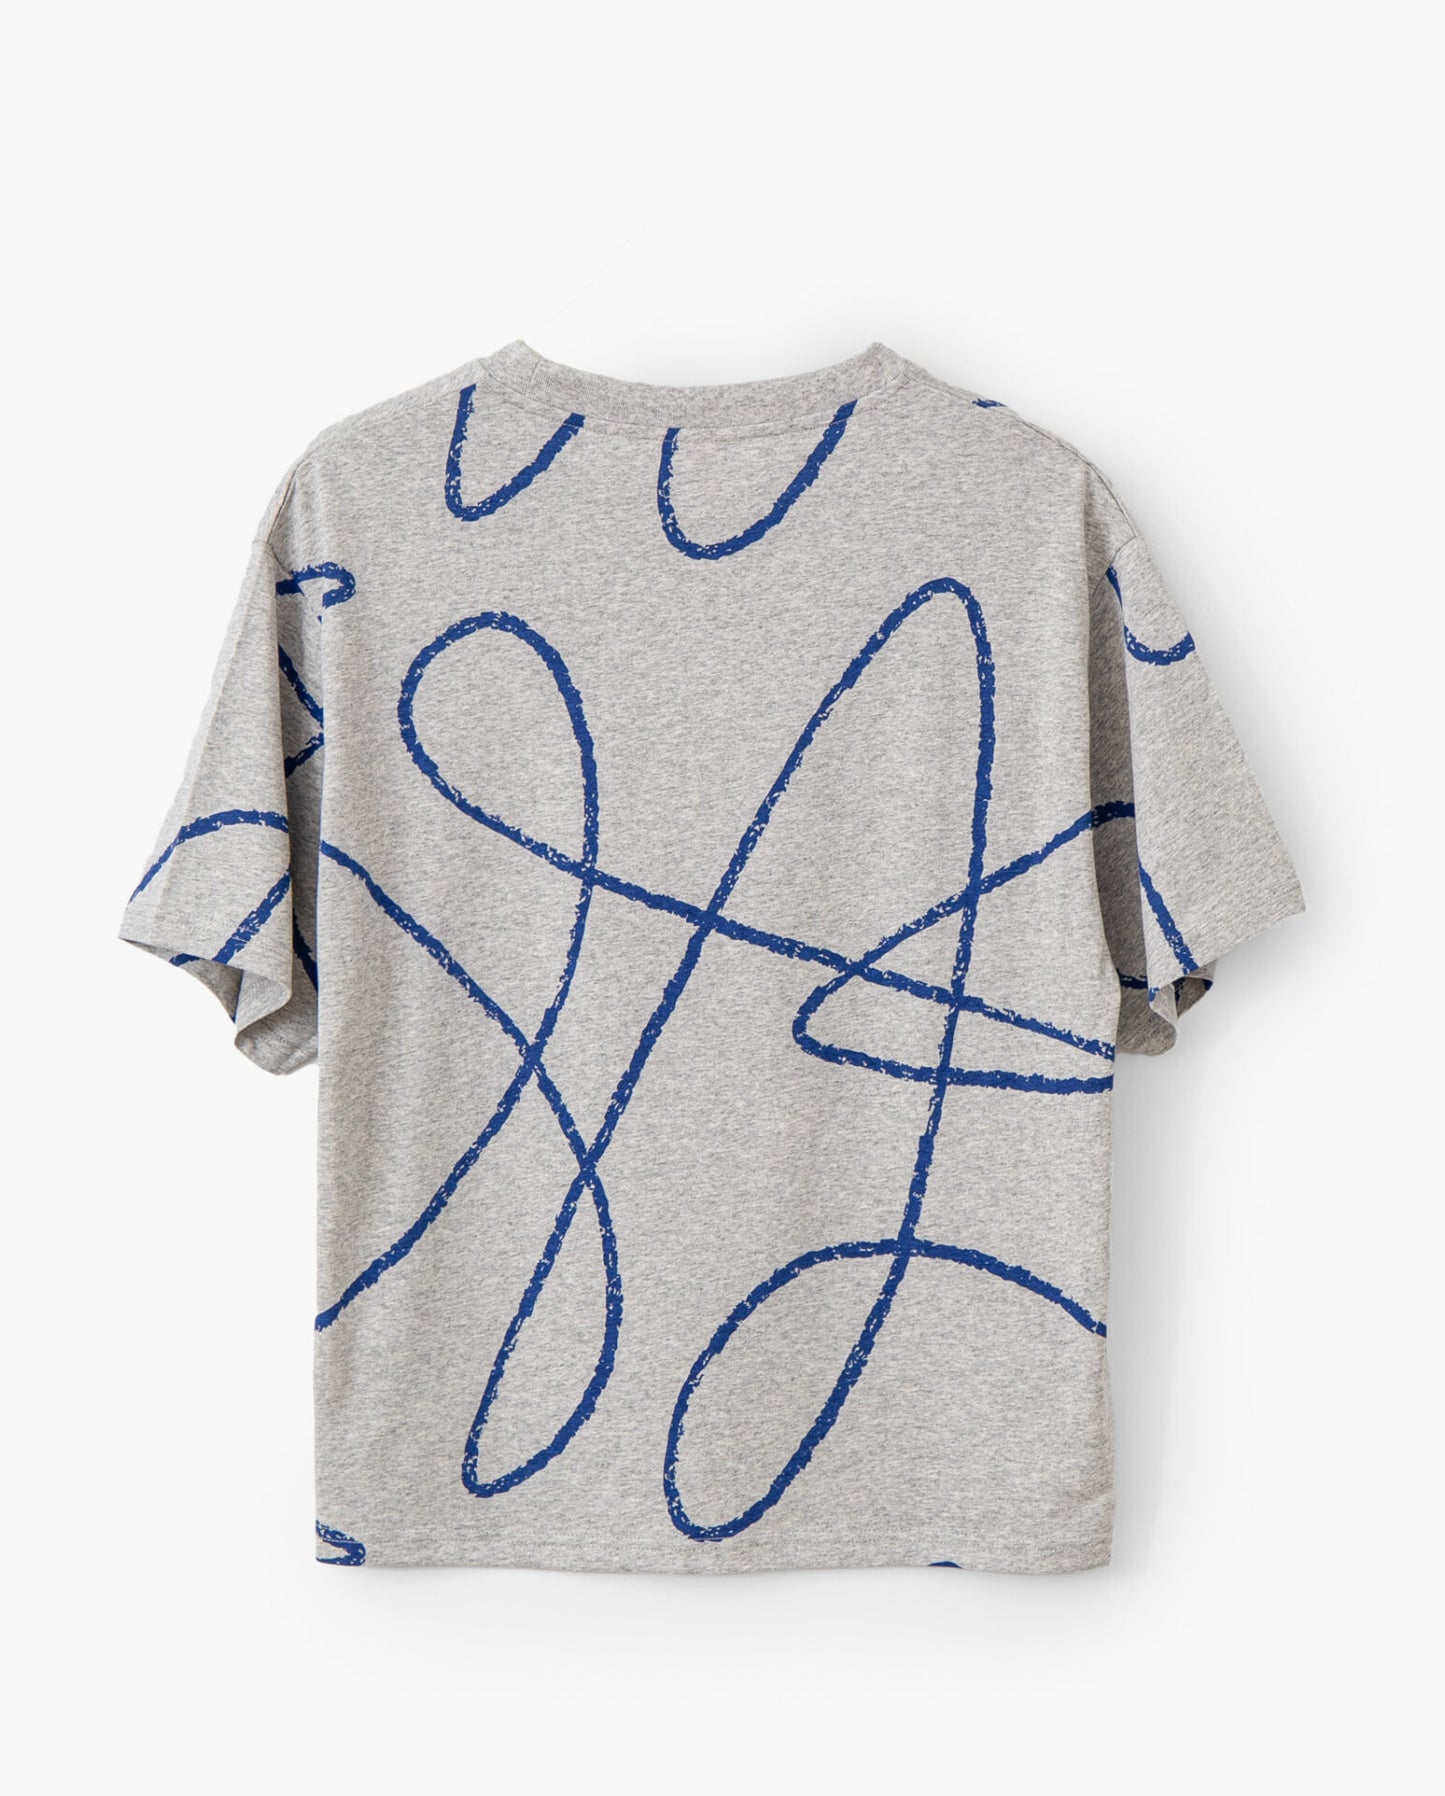 Doodle pattern T-shirt